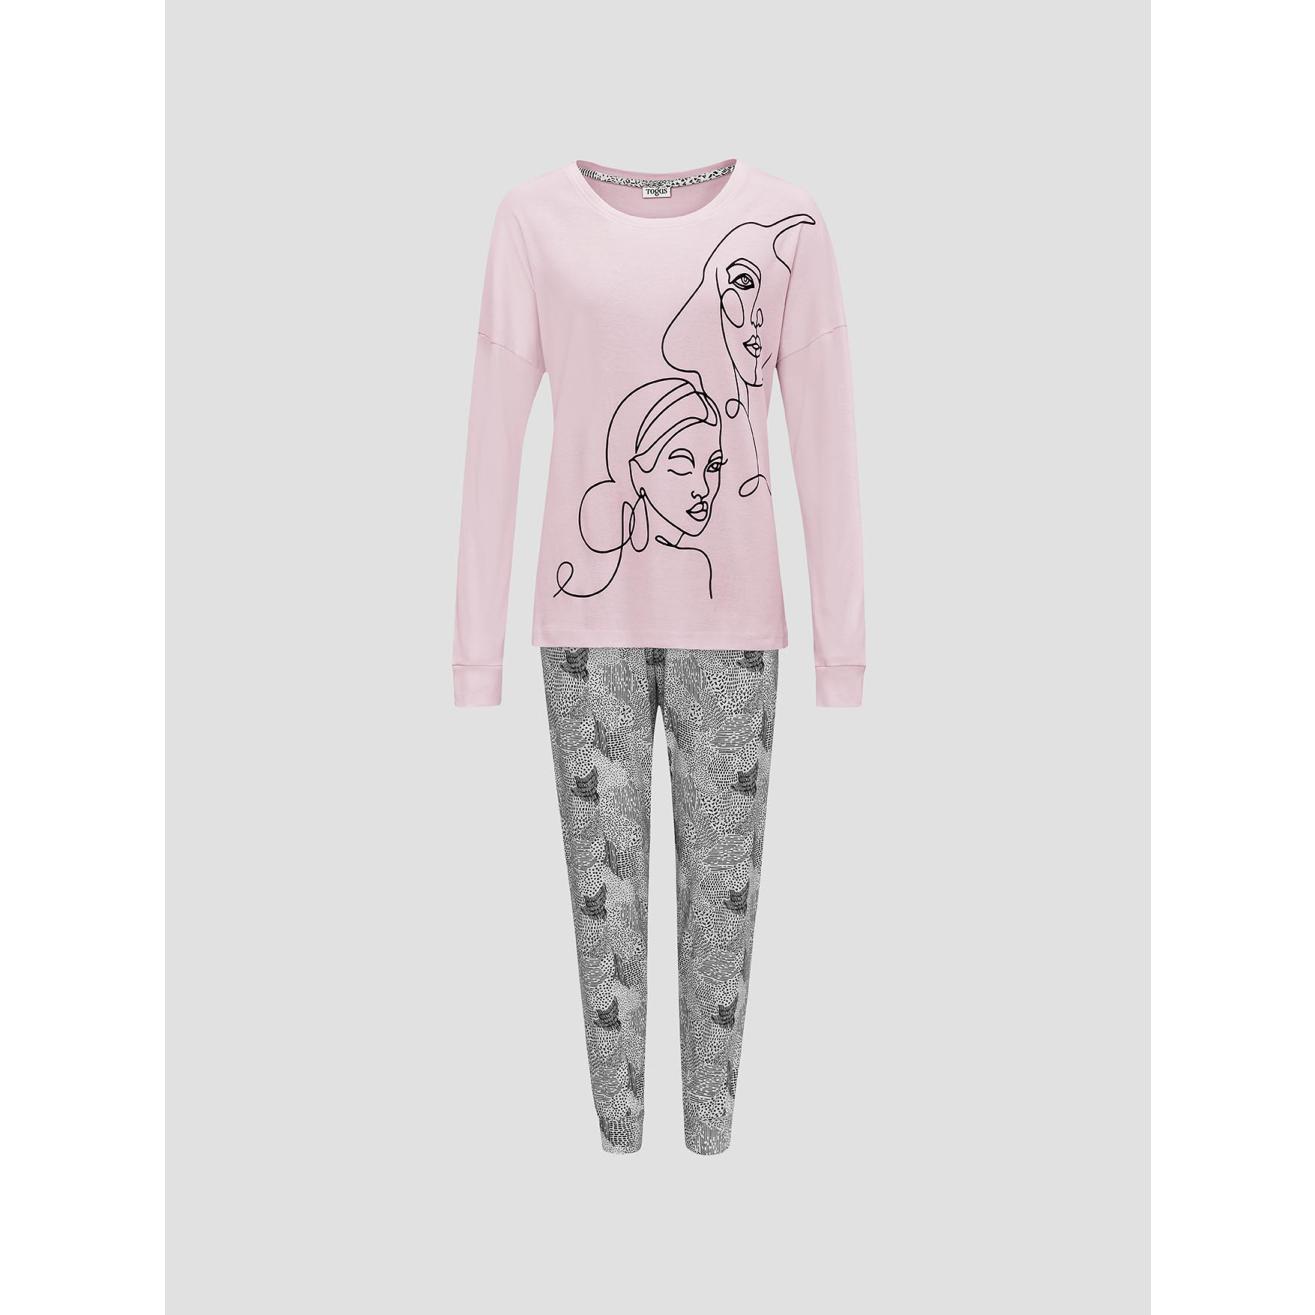 Пижама для девочек Togas Teens Кэрри розово-серая 146 см жен пижама клубничный зайка розовый р 40